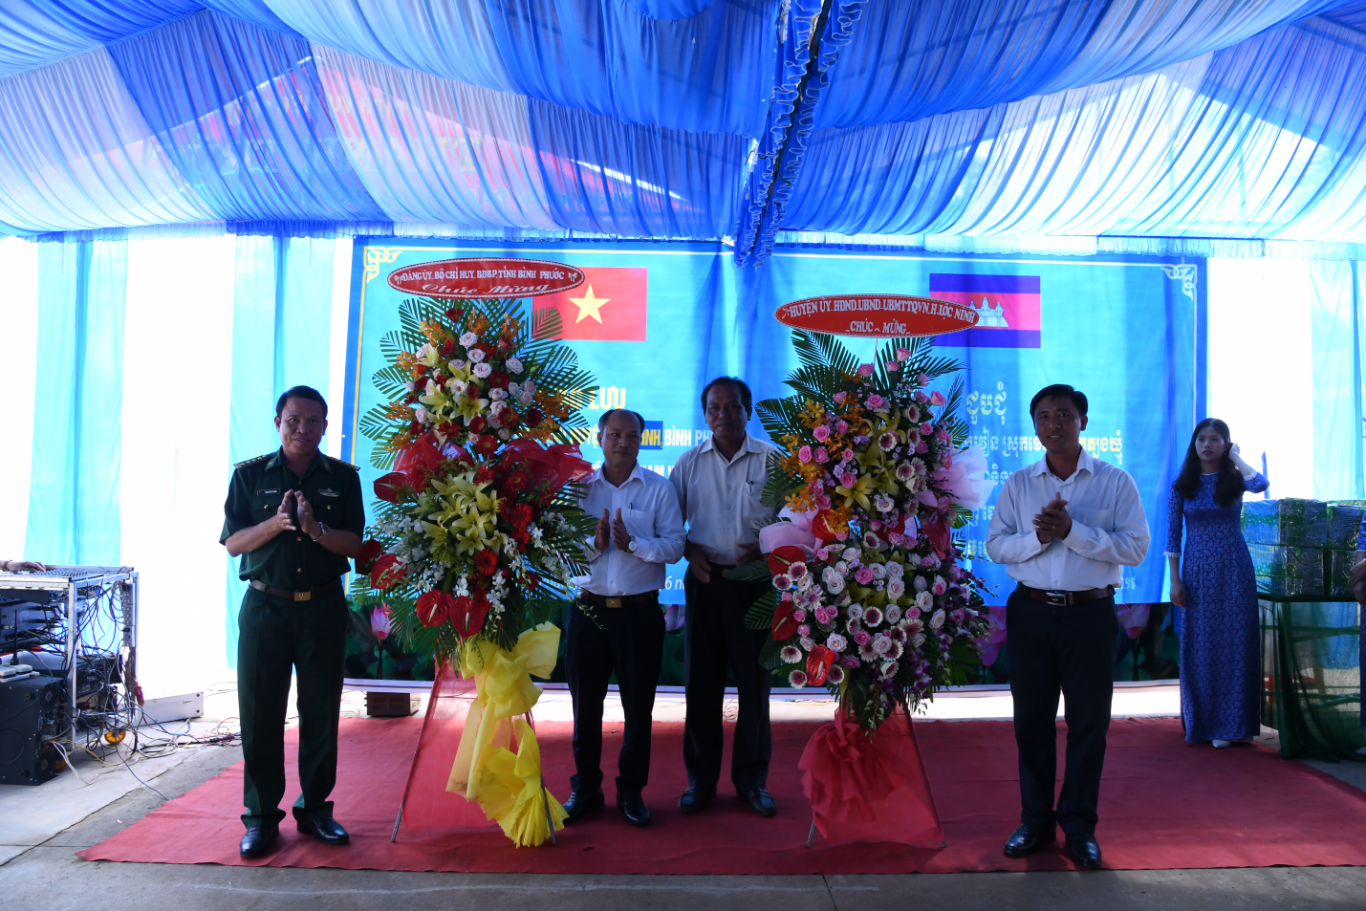 Lãnh đạo BĐBP tỉnh Bình Phước và UBND huyện Lộc Ninh, Bình Phước tặng hoa chúc mừng tại buổi giao lưu